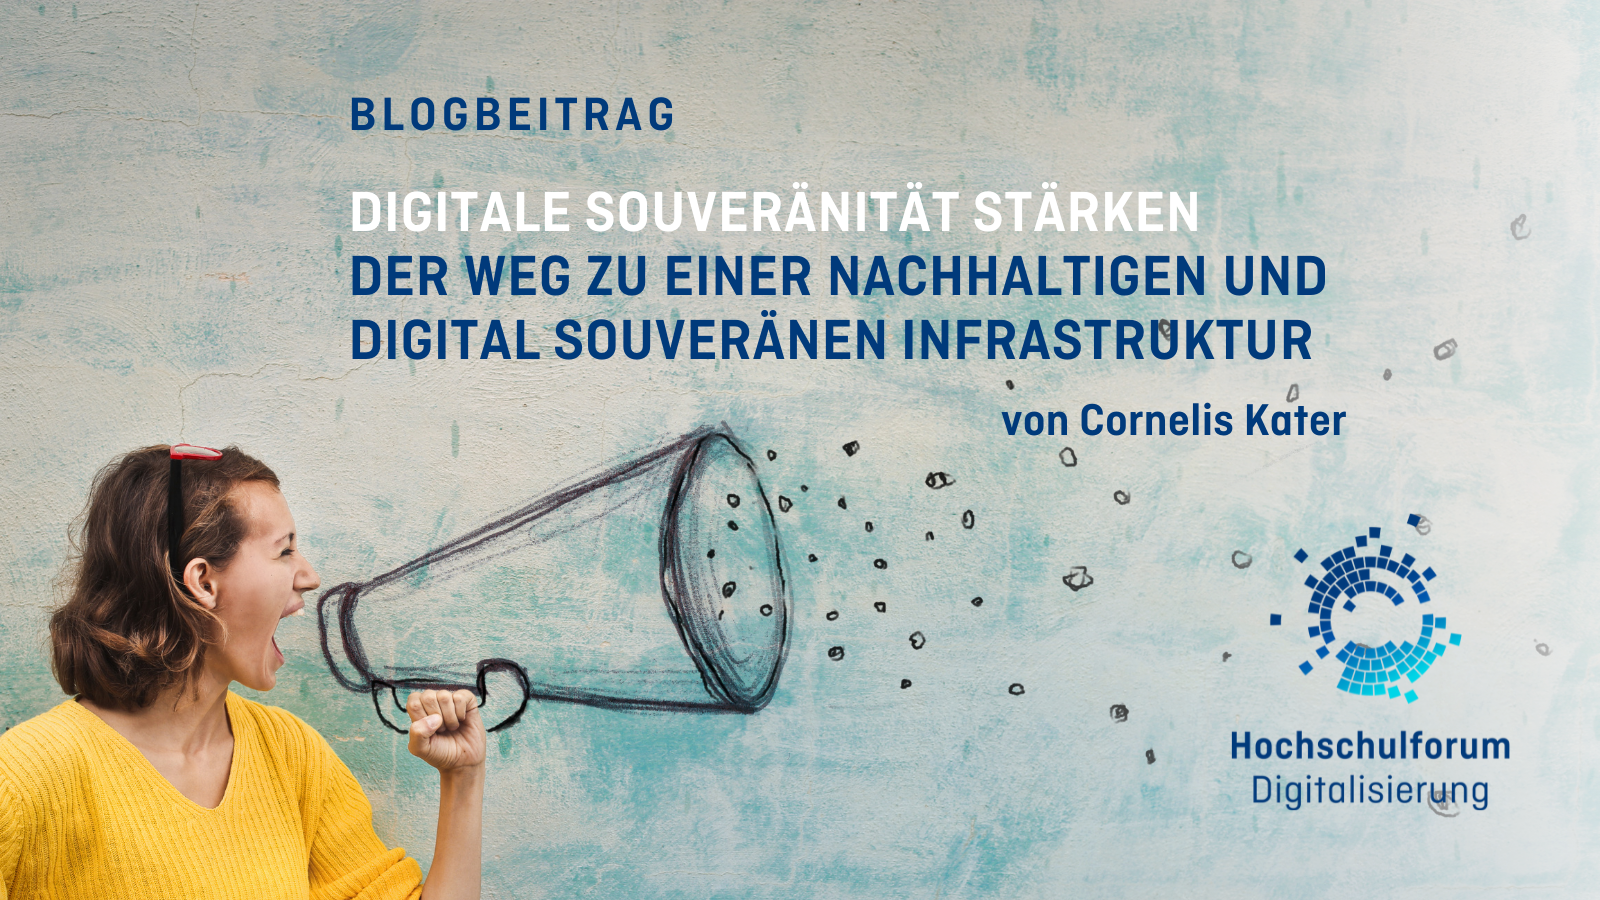 Bild links: Frau im gelbenPullover hält ein Megaphon. Text: Blogbeitrag. Digitale Souveränität stärken. Von Cornelis Kater.